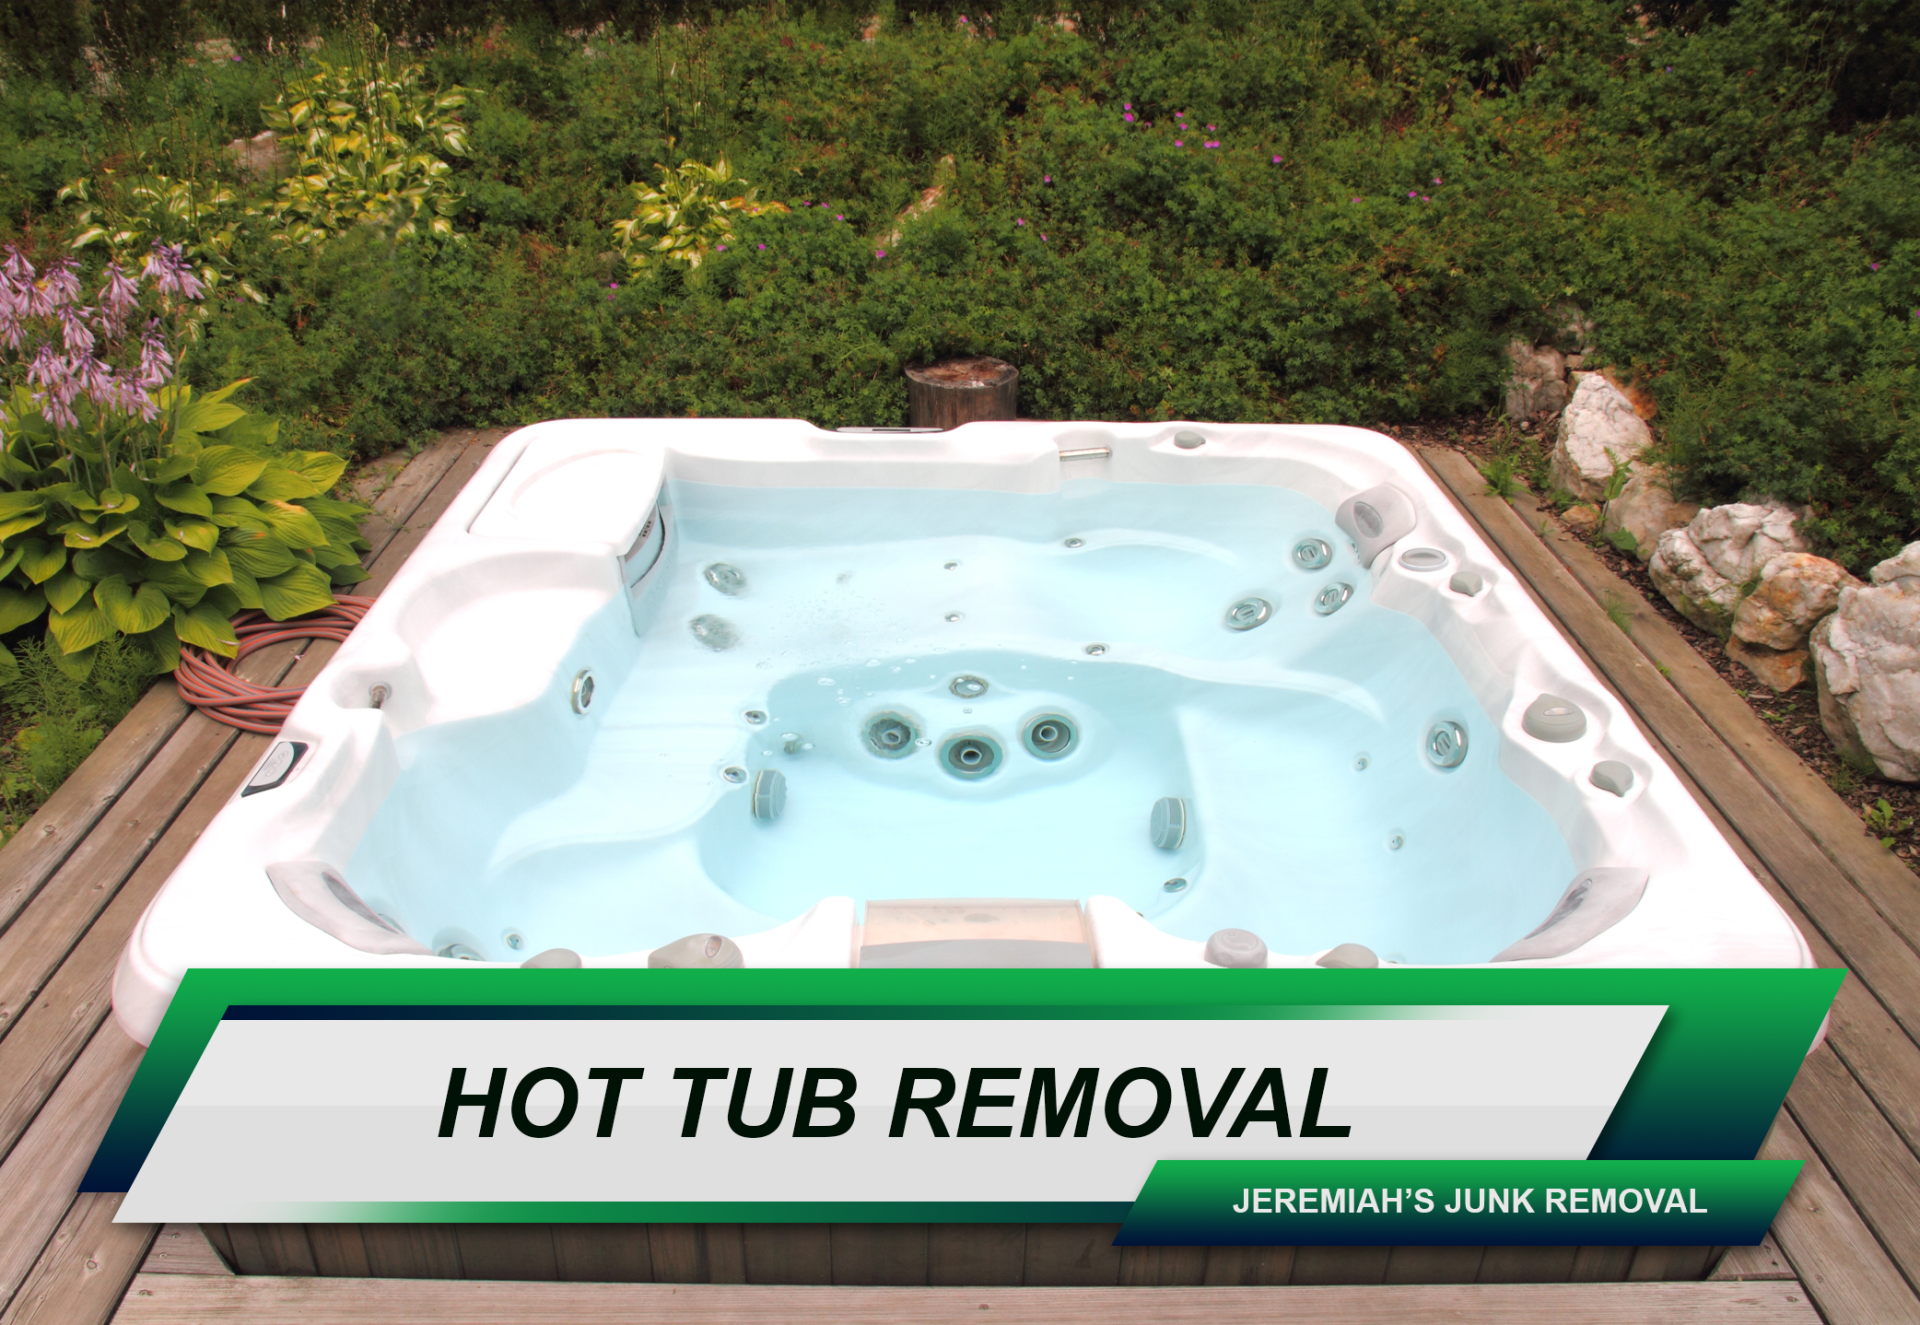 Hot tub removal Brooklyn, NY